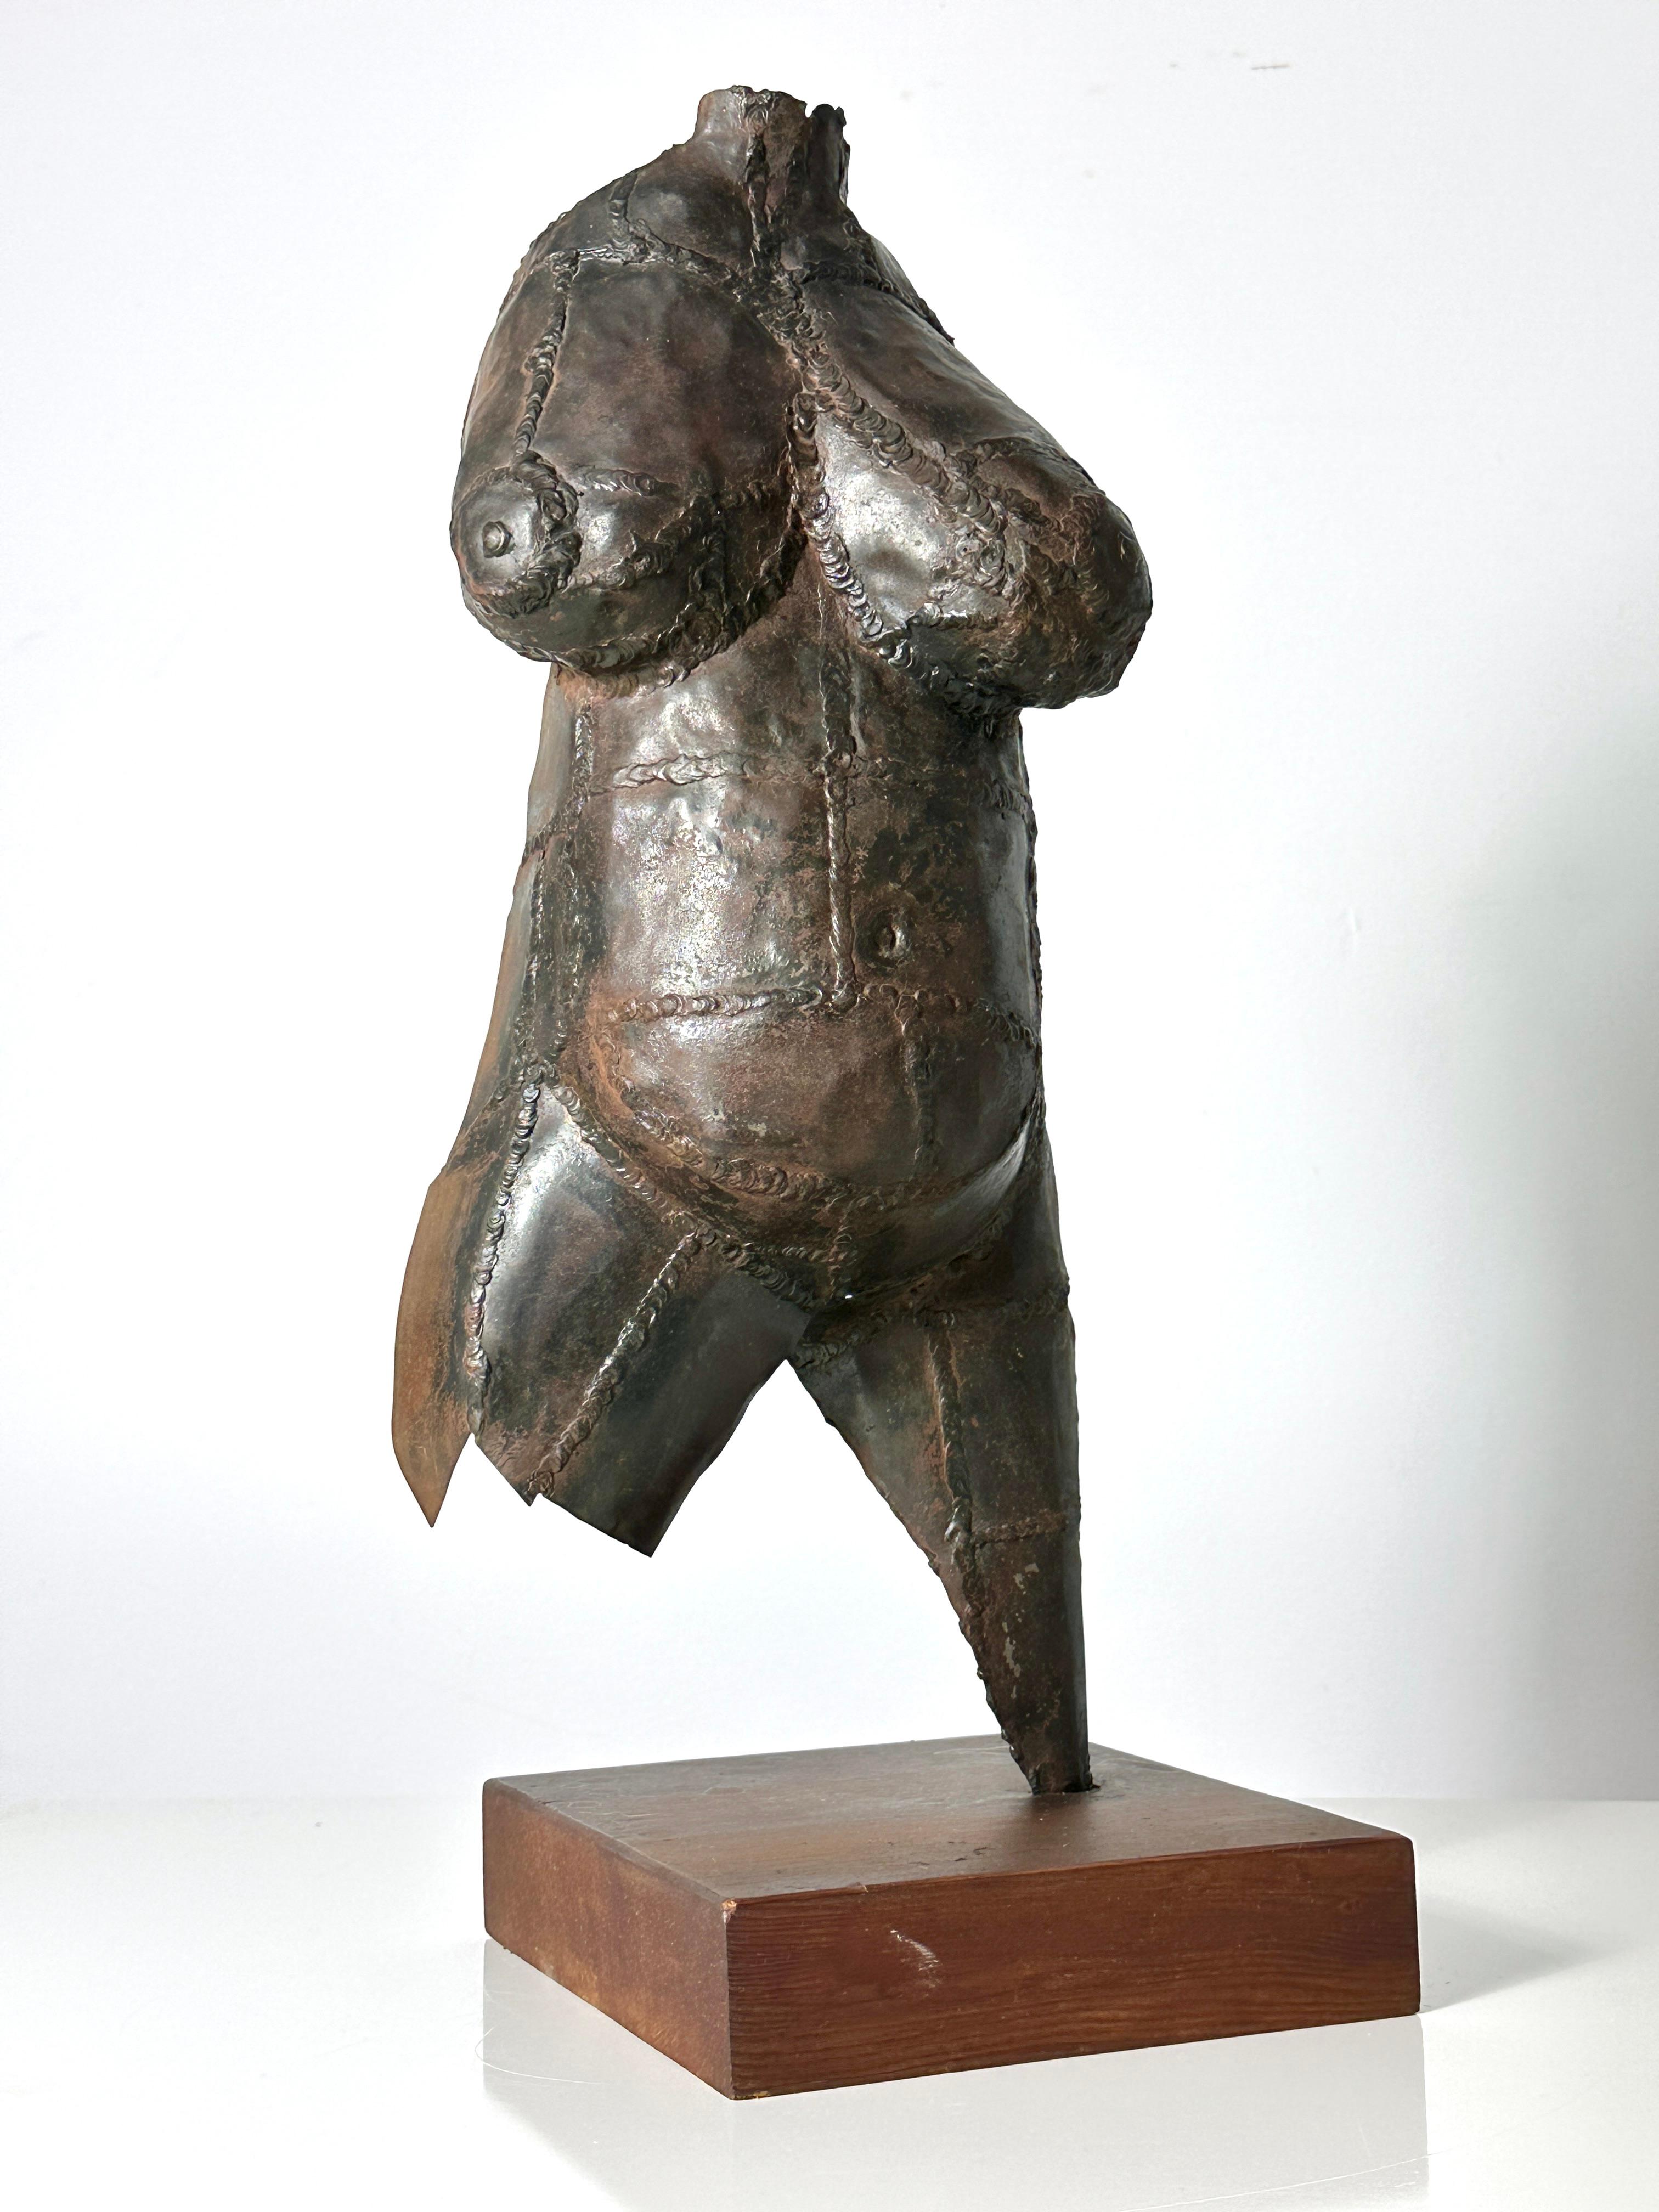 Abstrakte Aktskulptur des Künstlers Fred Scott aus Ohio, ca. 1960er Jahre
Weiblicher Torso, aus geschweißtem Stahl geformt und auf einen Holzsockel montiert
Erworben aus dem Nachlass des Künstlers
Original-Ausstellungsetikett am Sockel